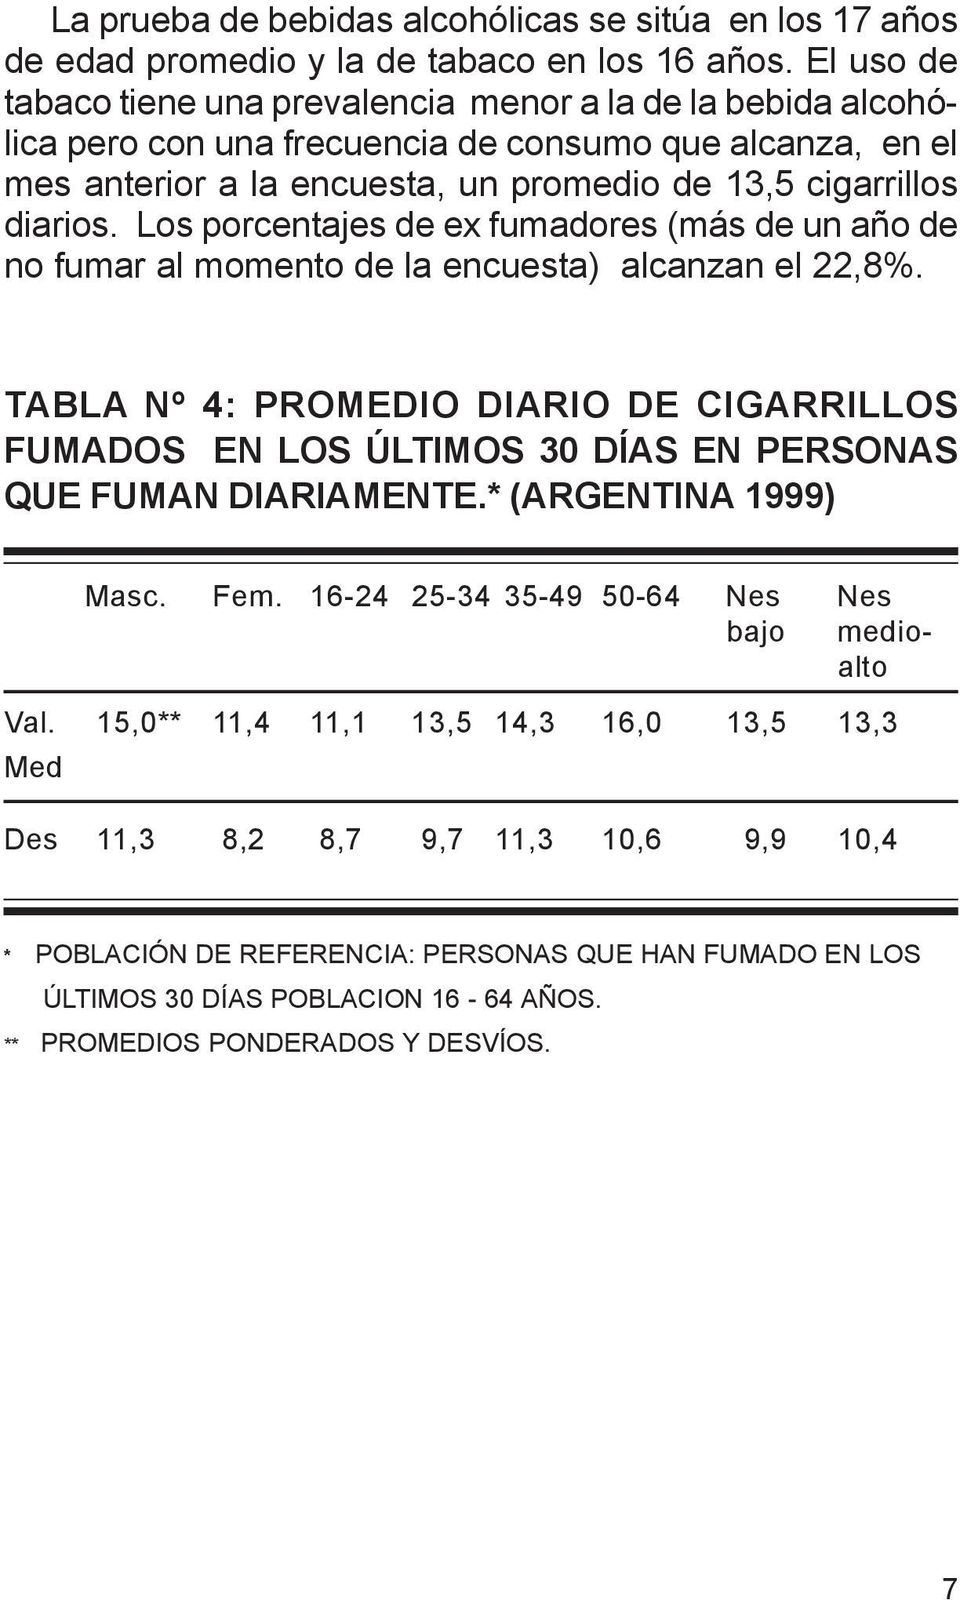 Los porcentajes de ex fumadores (más de un año de no fumar al momento de la encuesta) alcanzan el 22,8%.